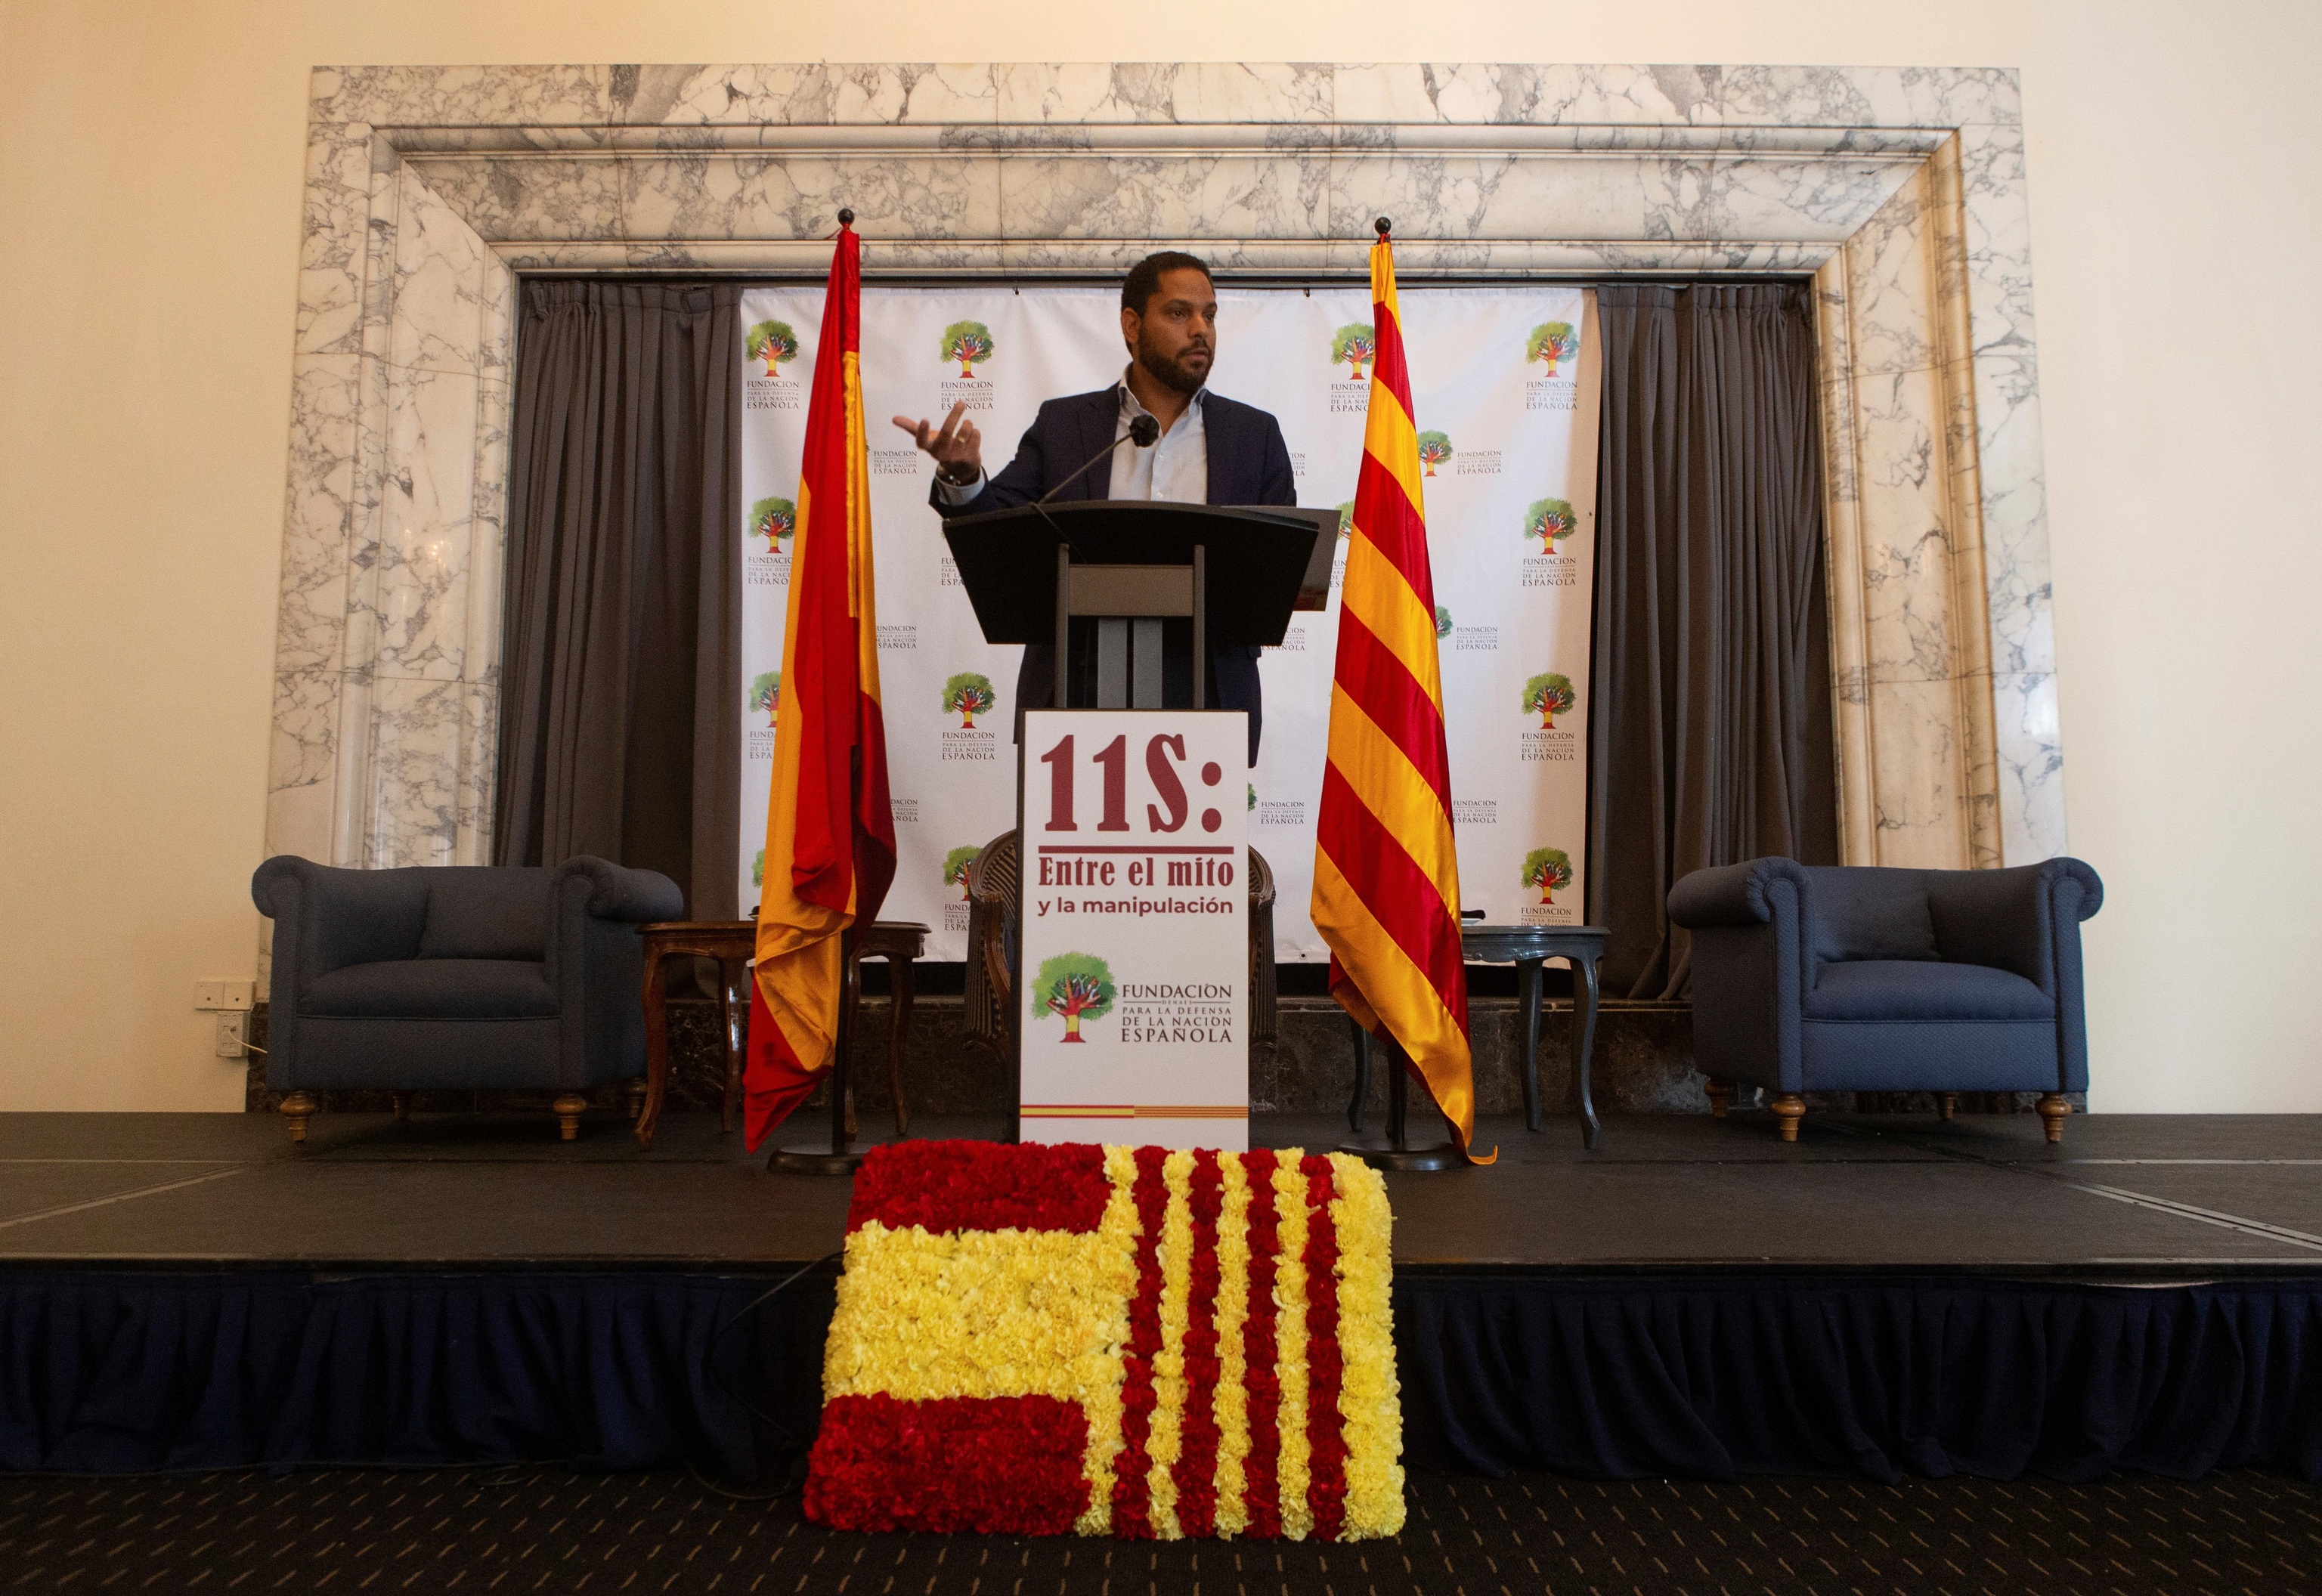 Ignacio Garriga, lder de Vox en Catalua, en un acto de la Fundacin Denaes.